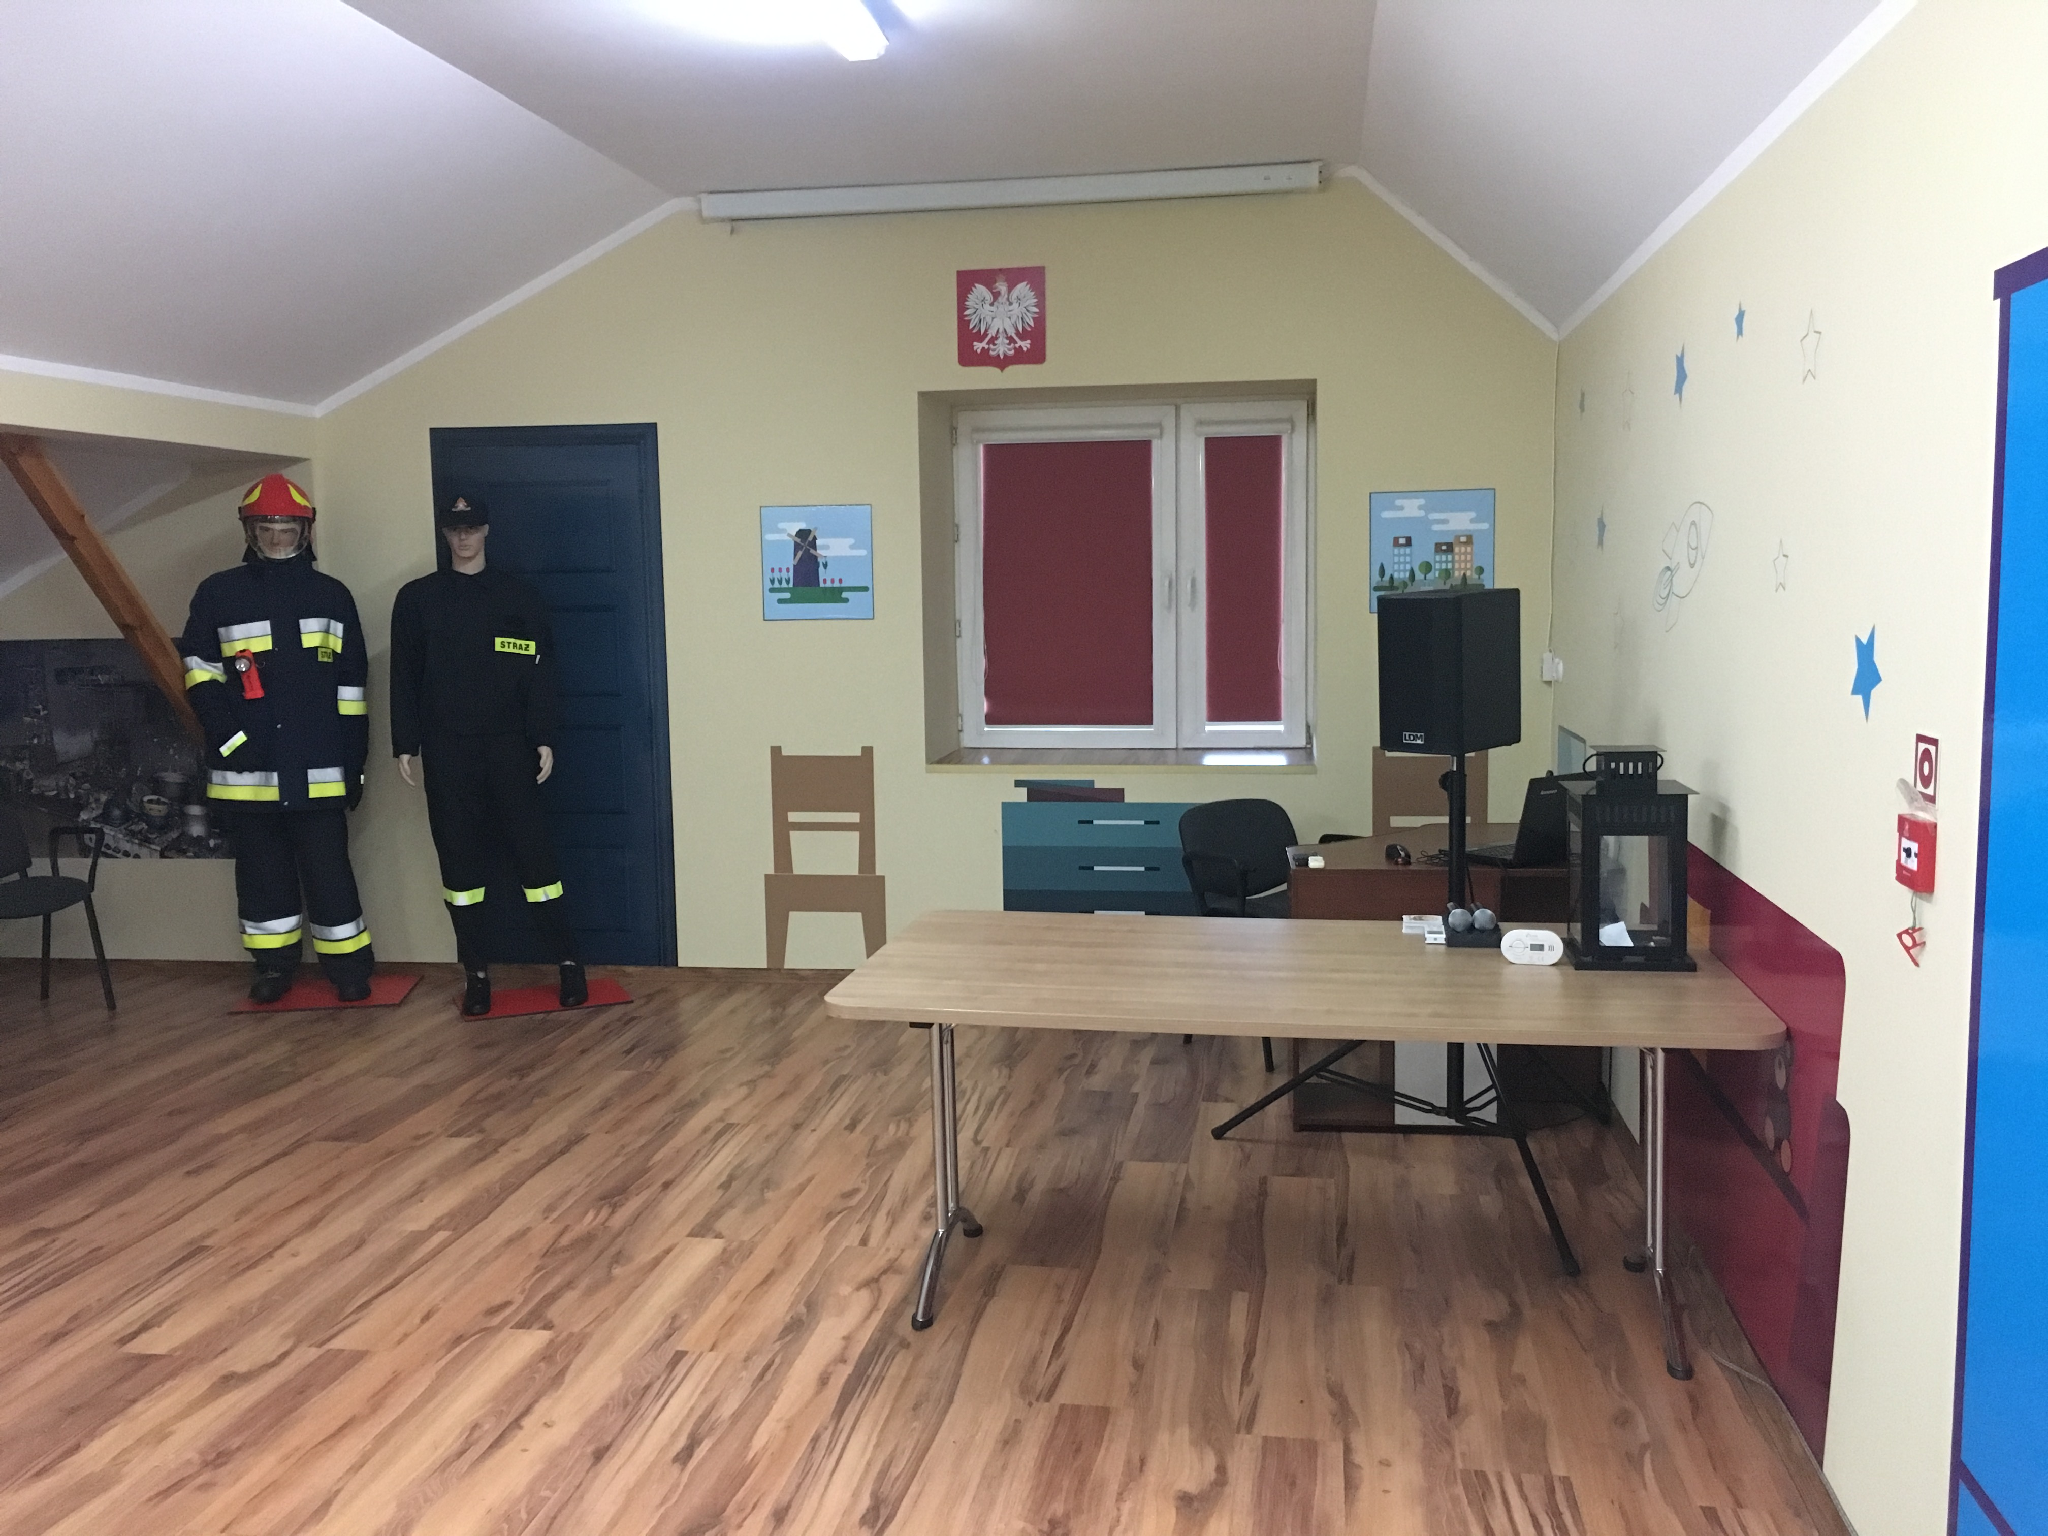 Zdjęcie przedstawia salę edukacyjną, po prawej stronie stanowisko do prowadzenia zajęć, po lewej 2 manekiny strażaka ubrane w mundur.